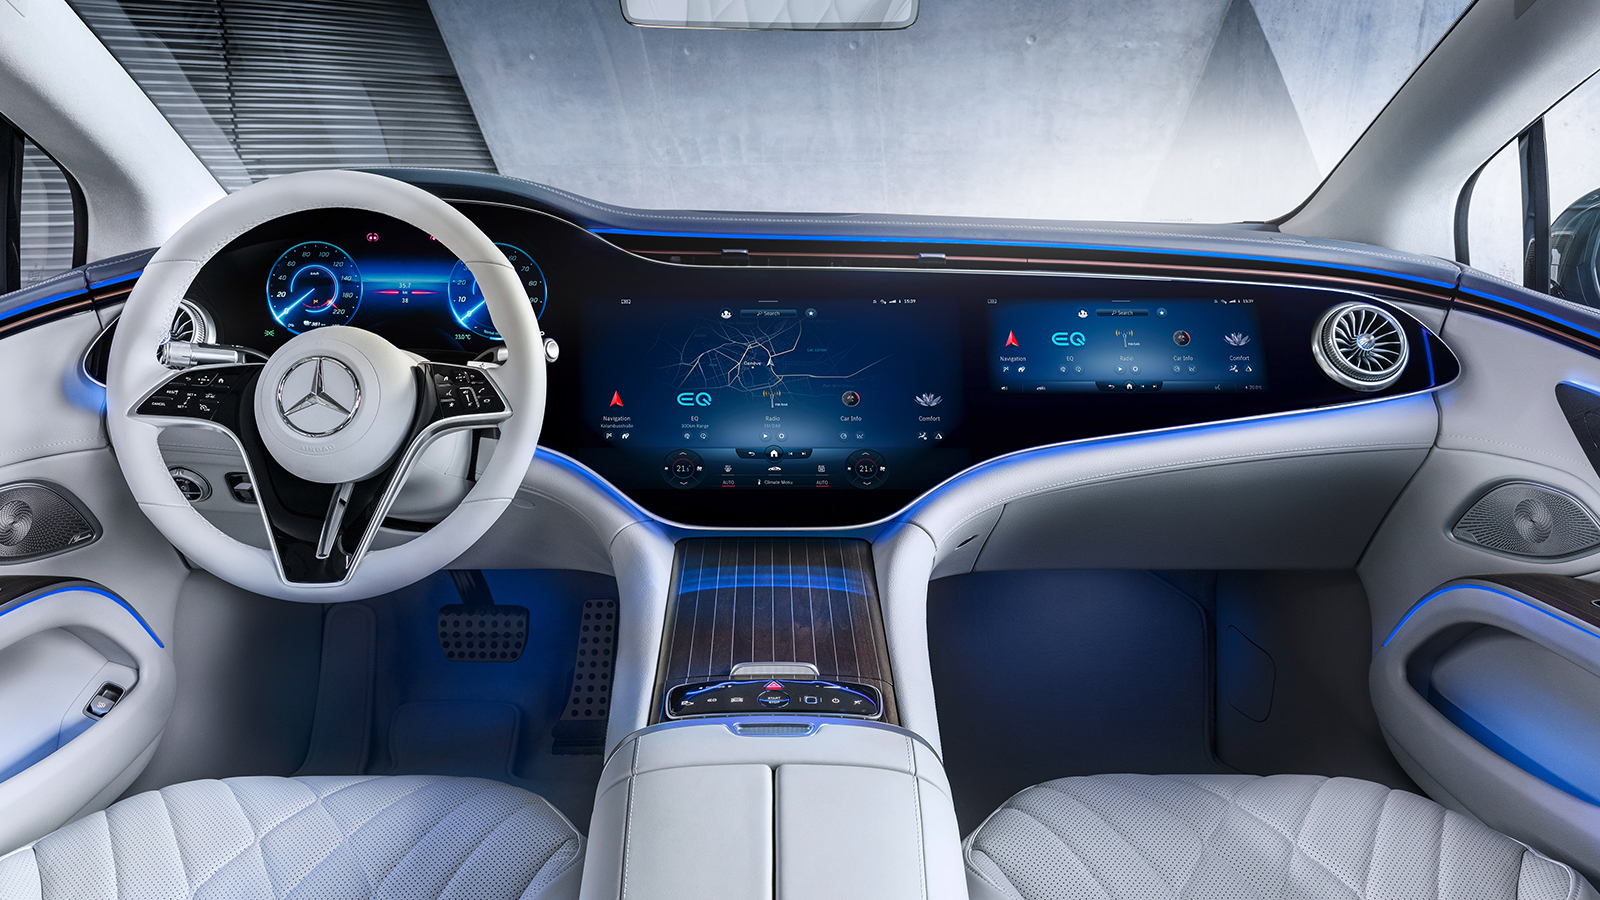 Mercedes-Benz công bố nội thất sedan hạng sang chạy điện EQS, tháng 8 ra mắt mercedes-benz-eqs-interior-detailed-1.jpg